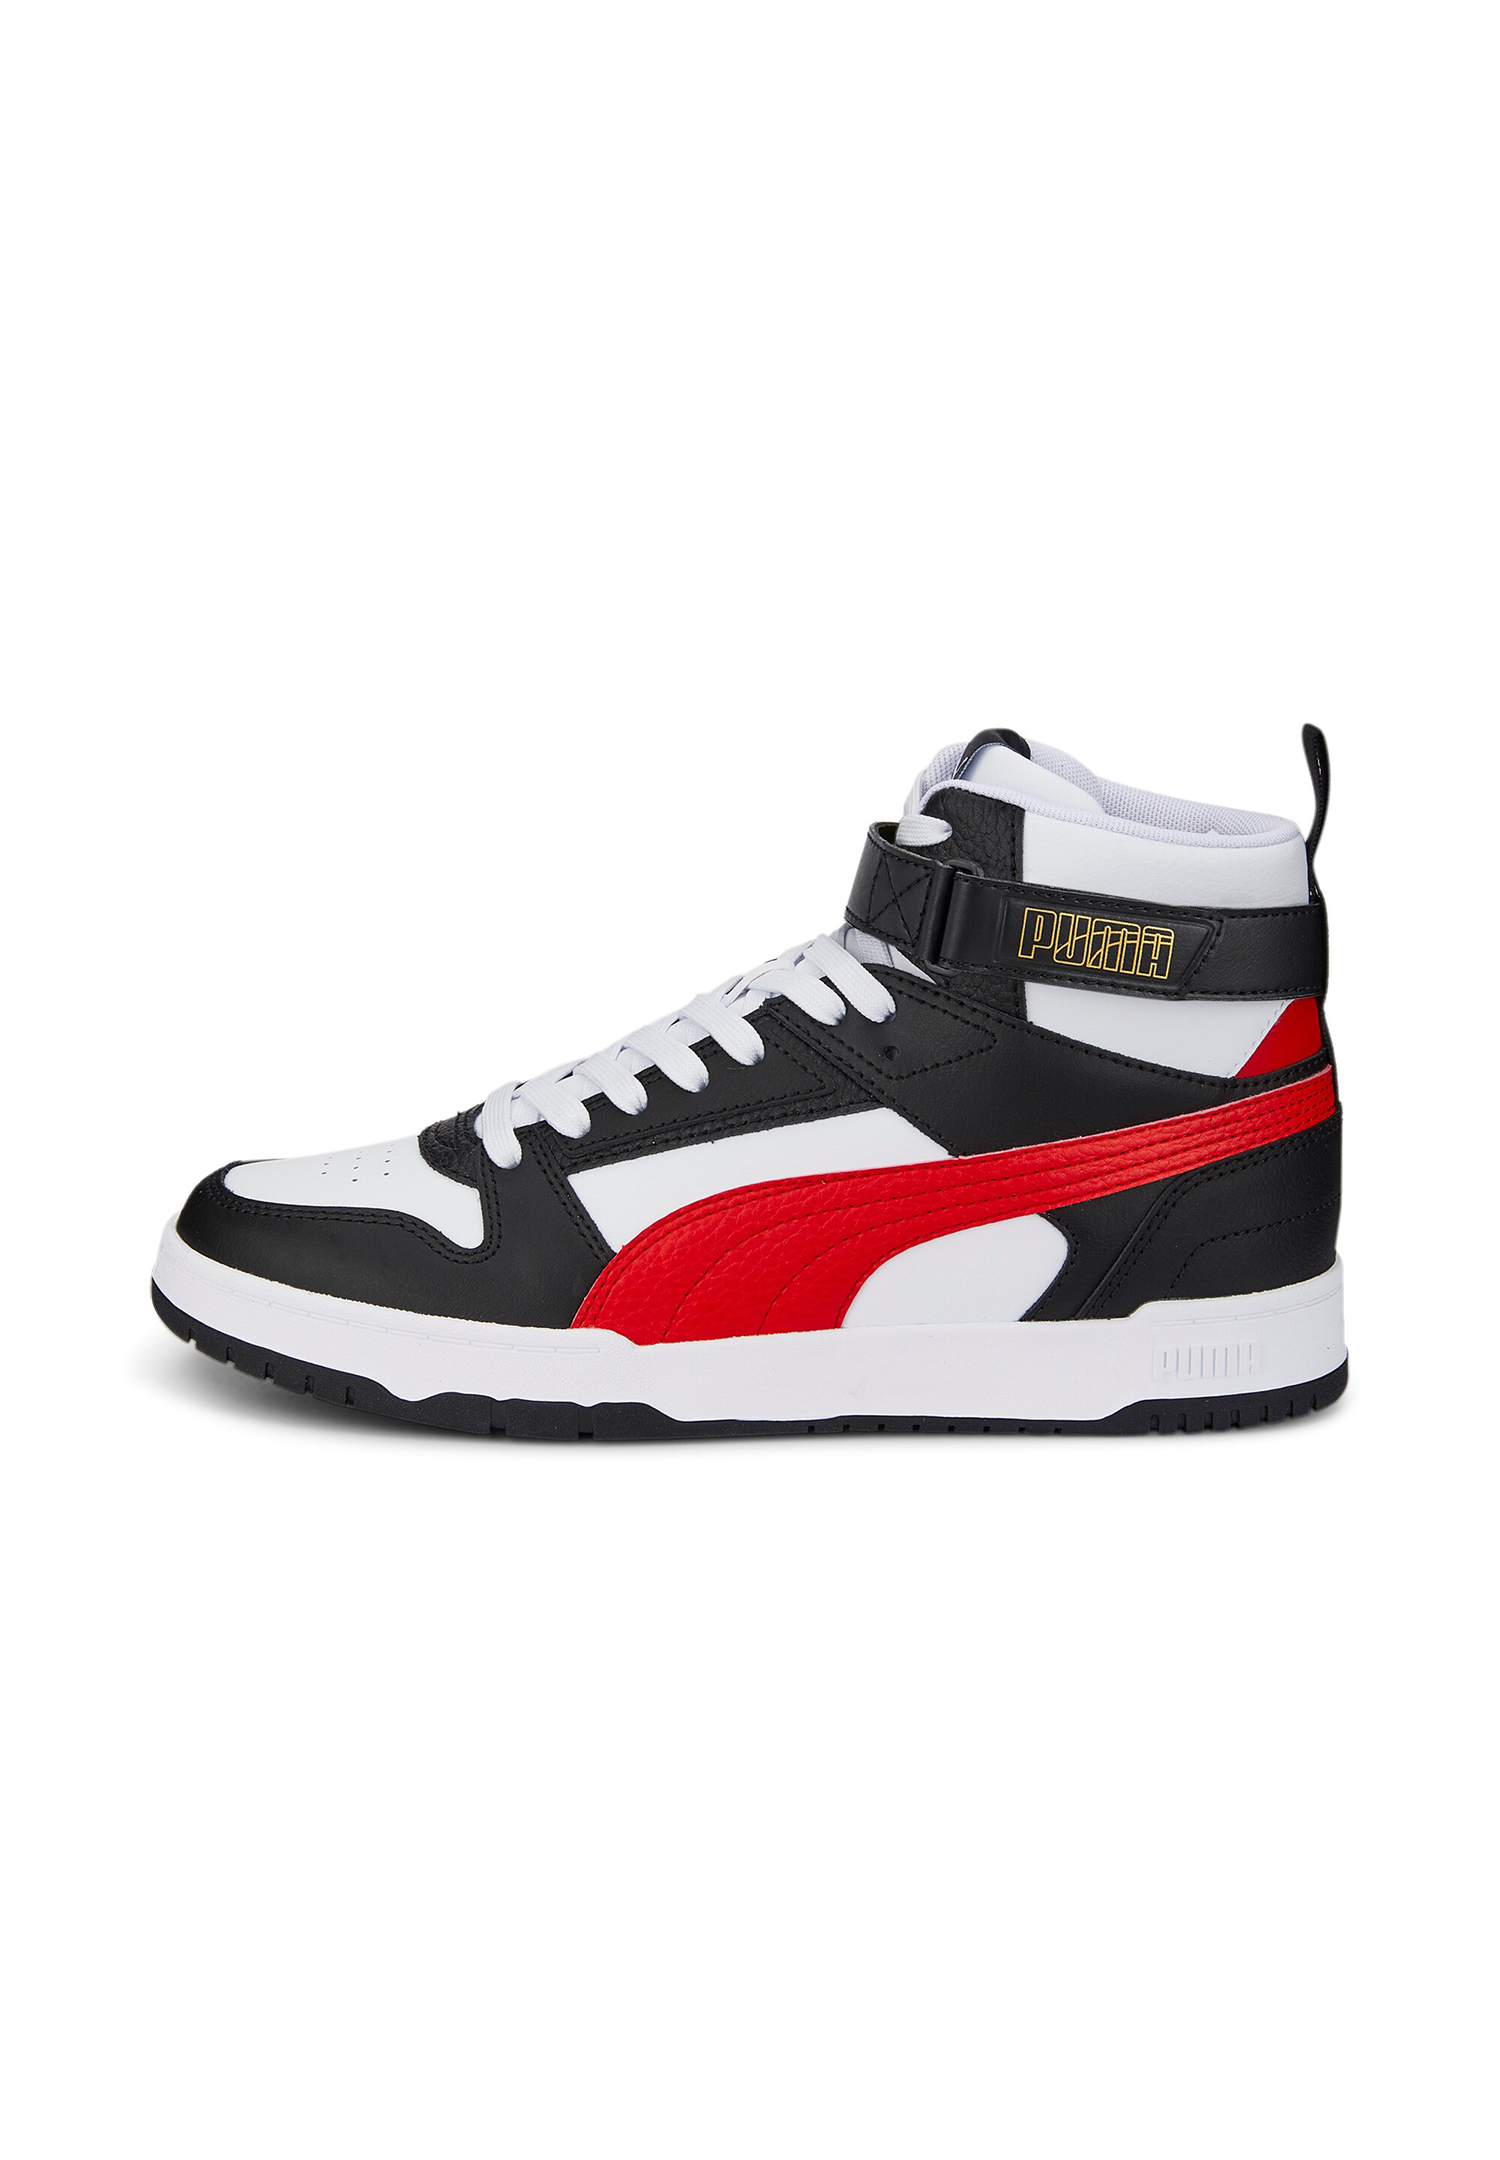 Puma RBD GAME Sneaker High Unisex 385839 05 weiss-rot-schwarz